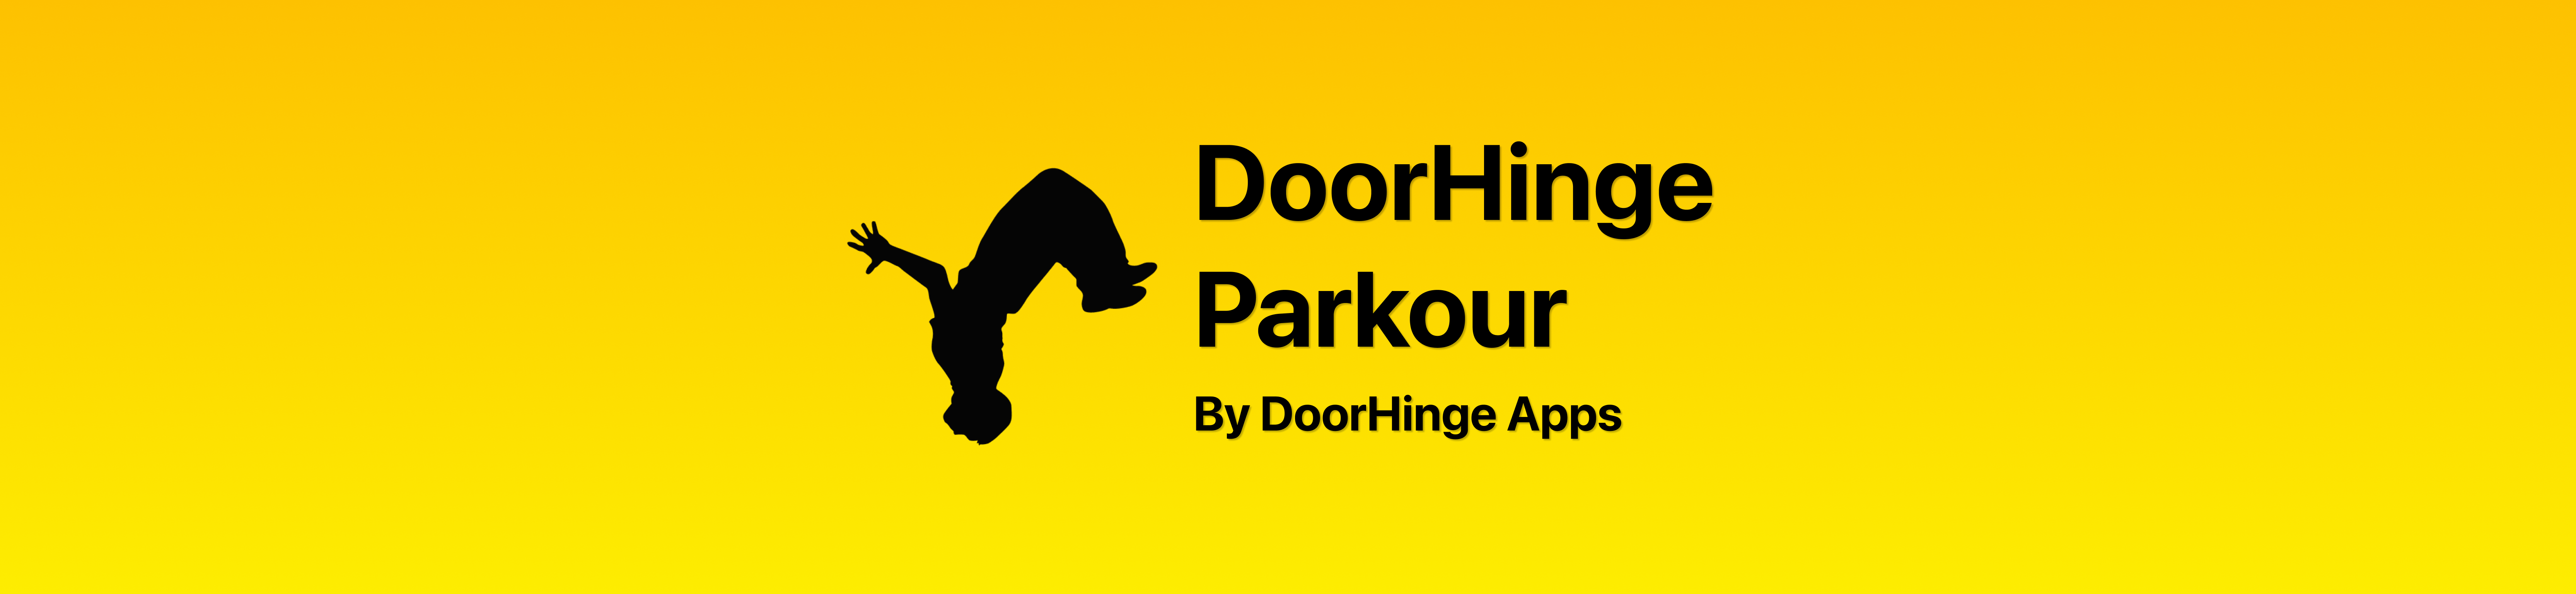 DoorHinge Apps